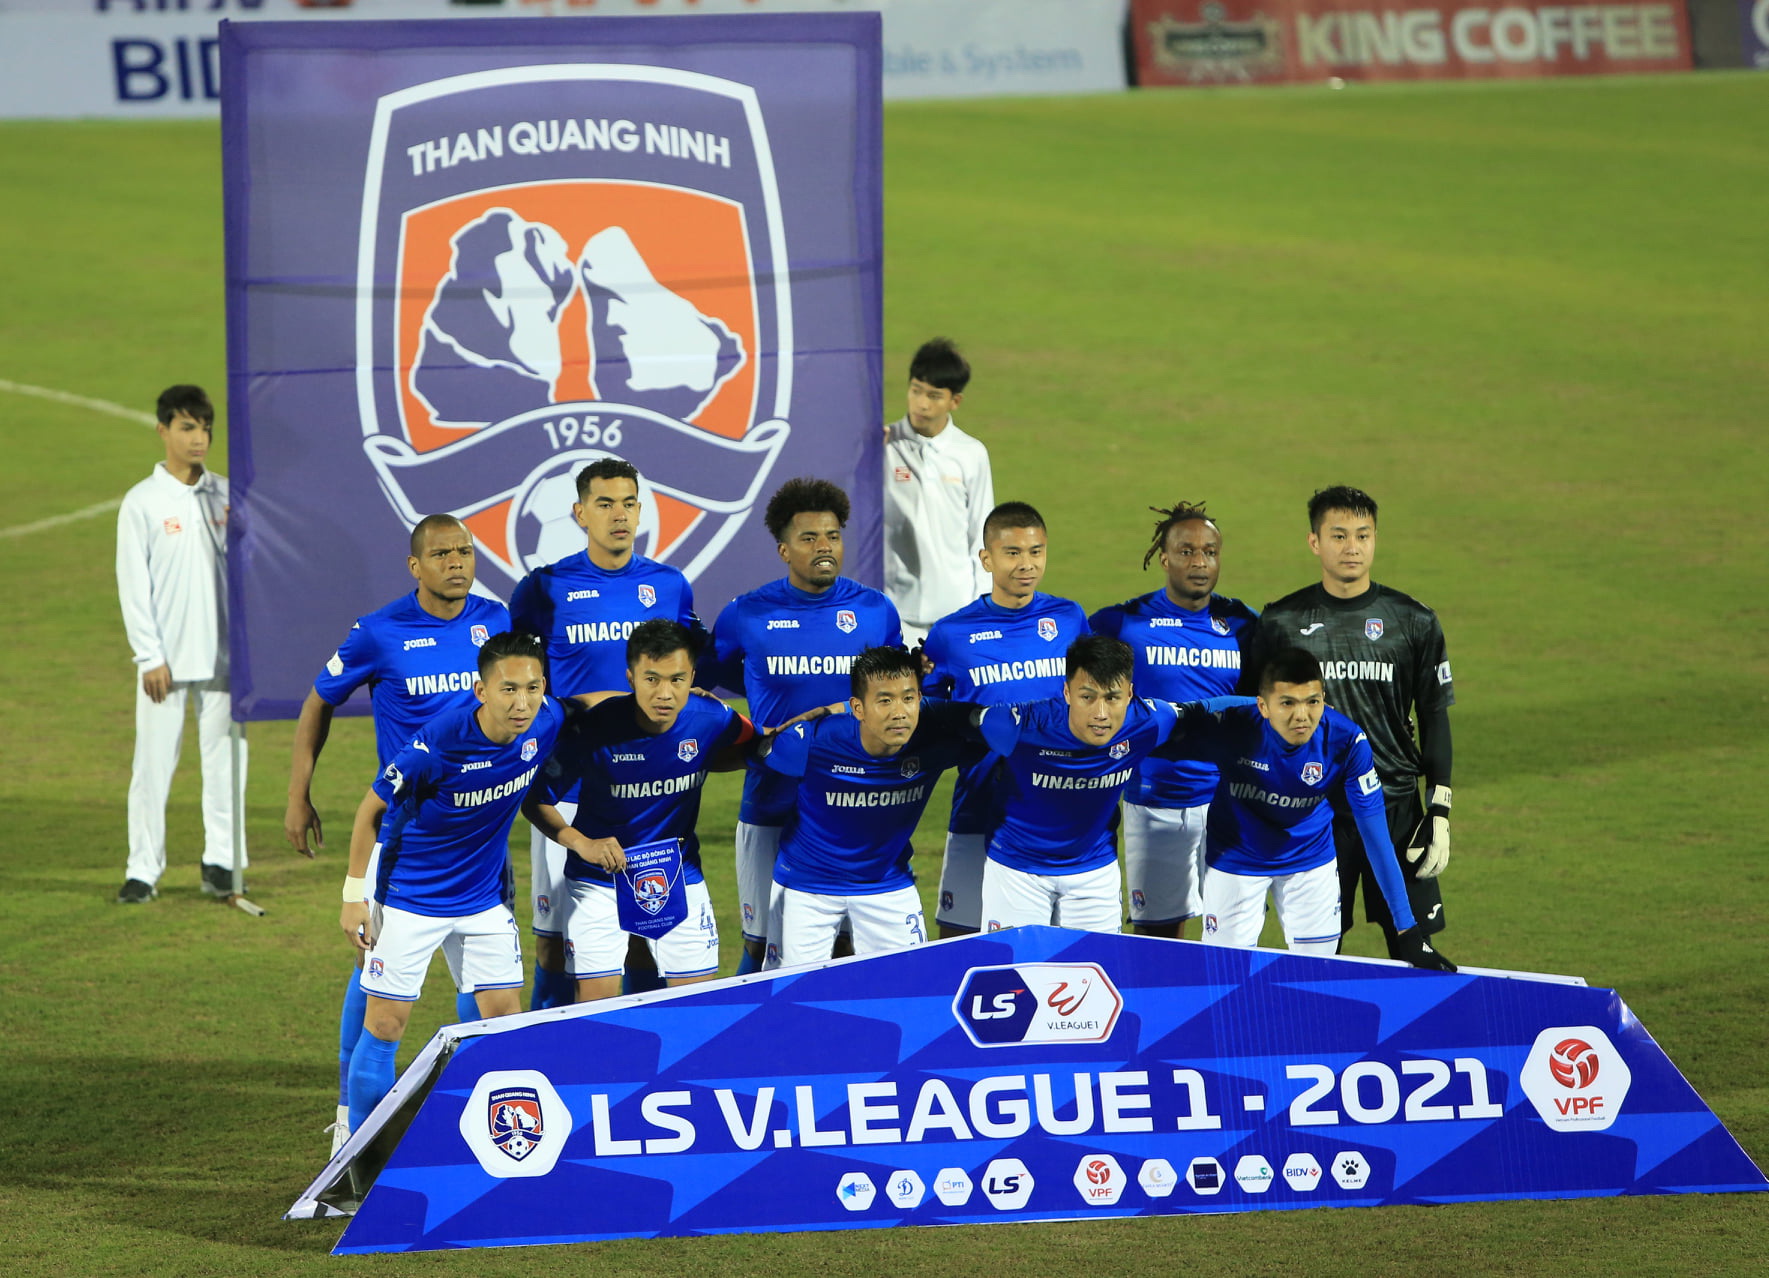 CLB Than Quảng Ninh rời V-League: Thất bại của bóng đá chuyên nghiệp - Ảnh 1.